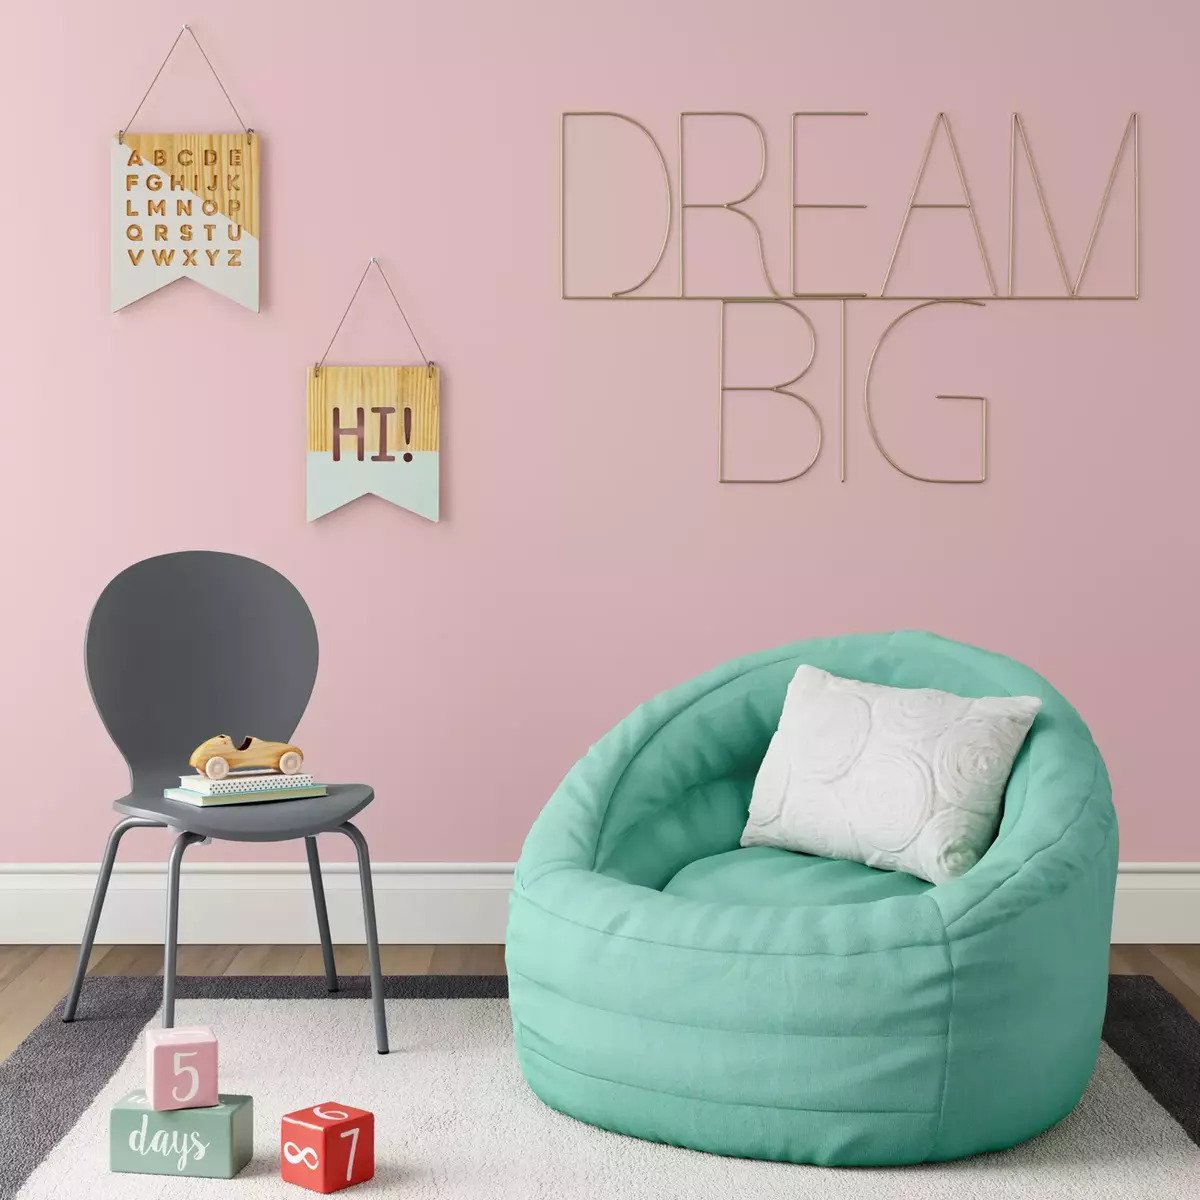 target pillowfort cocoon bean bag chair